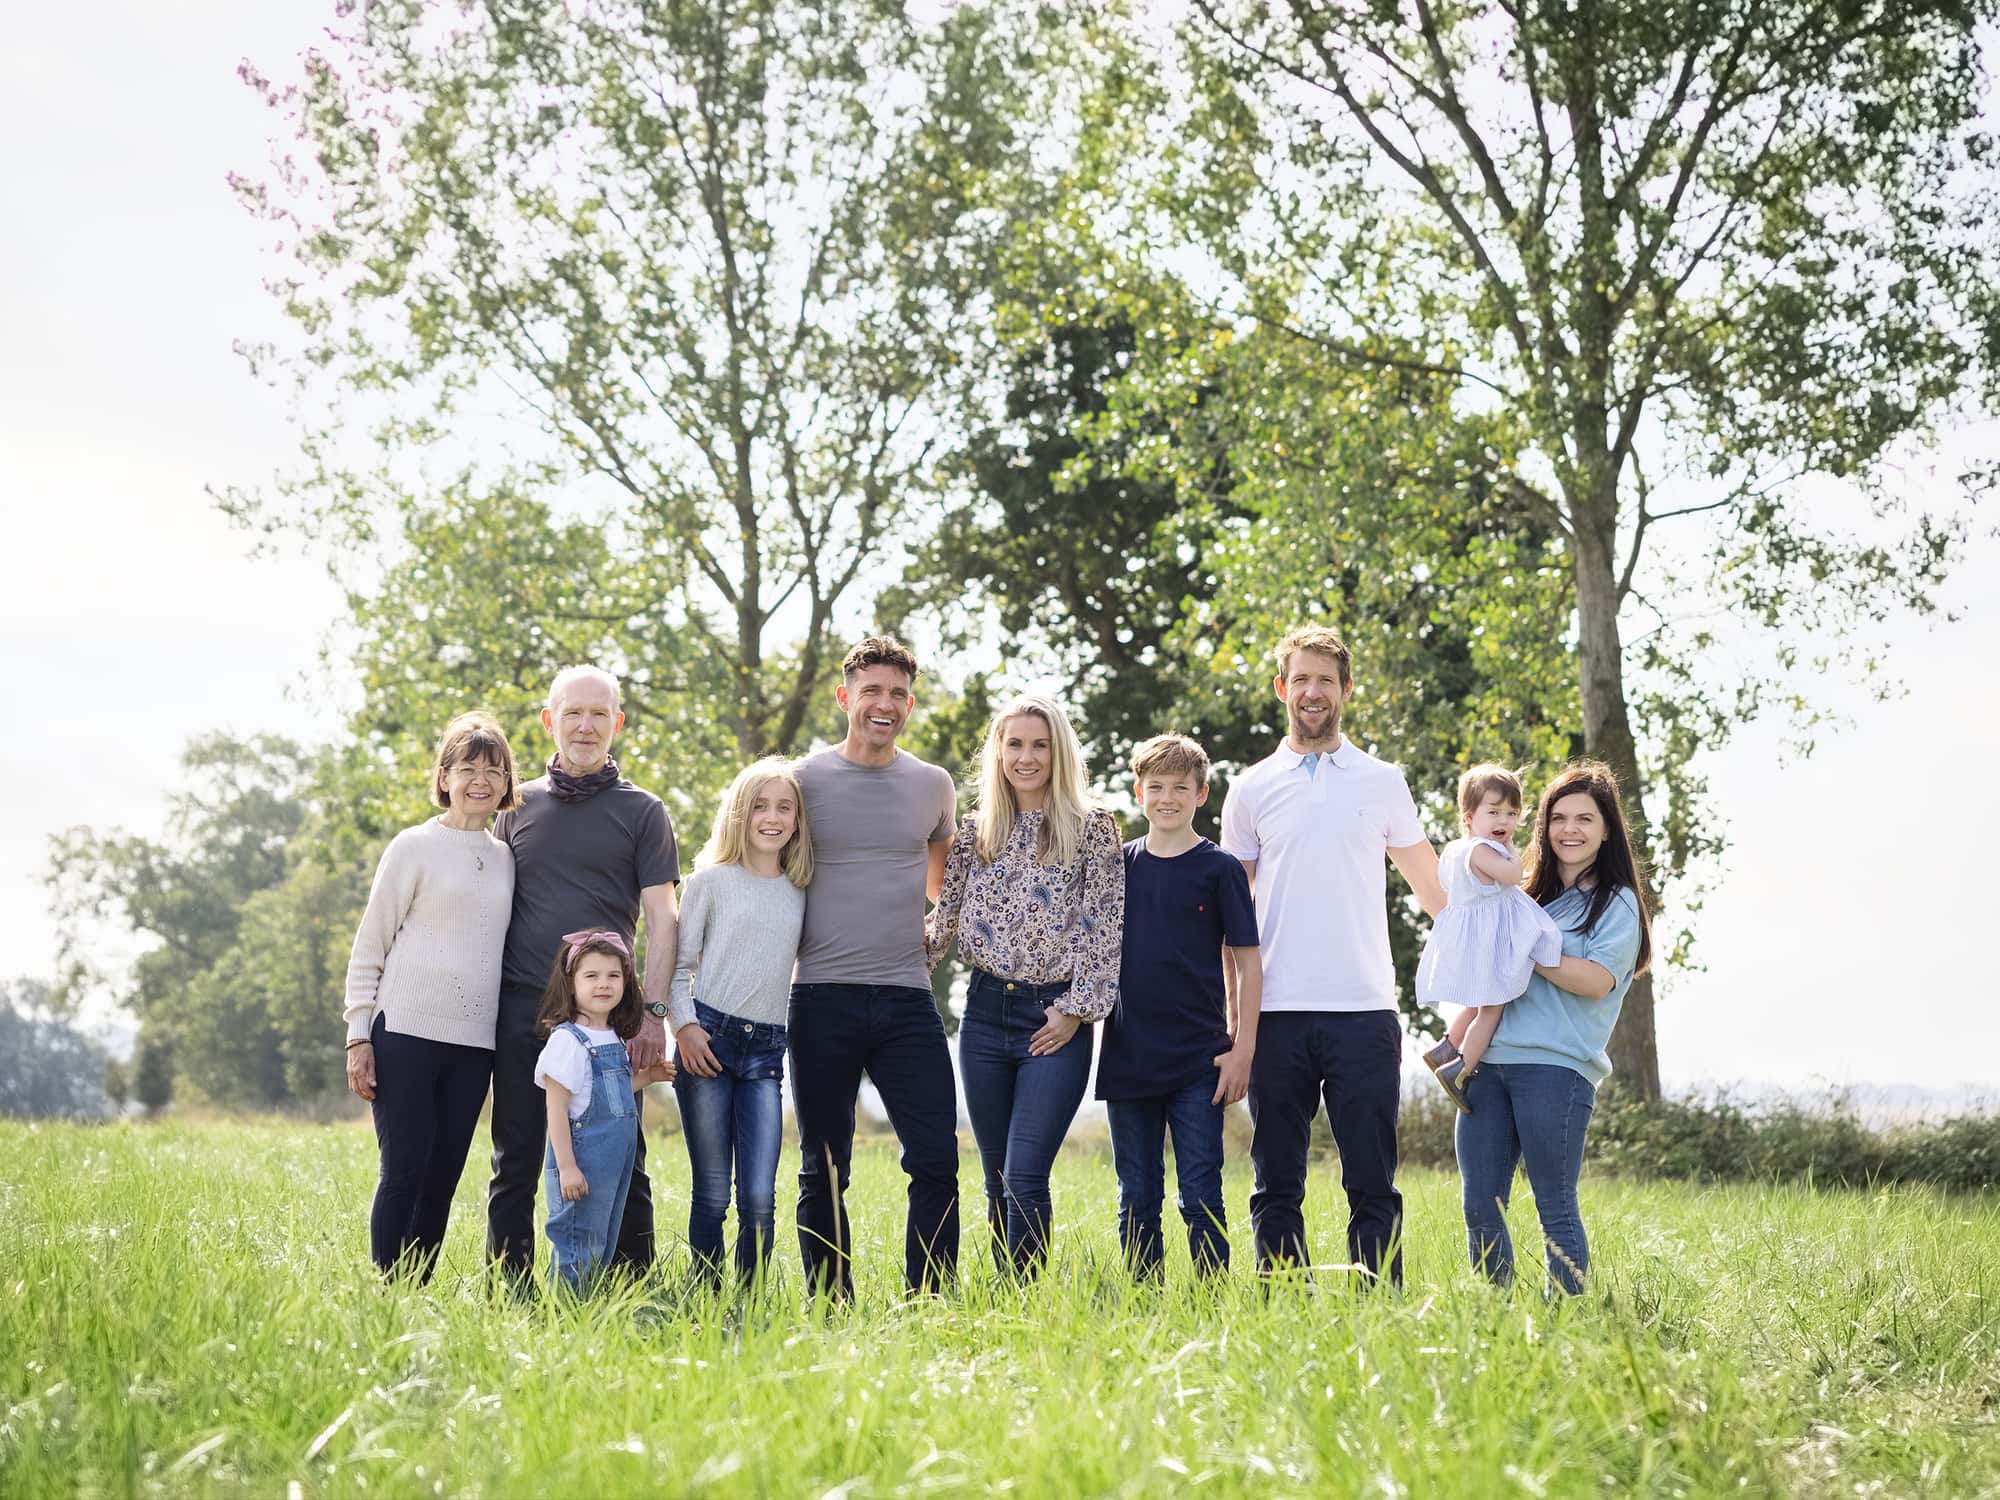 Extended Family Photo taken in a field in Suffolk